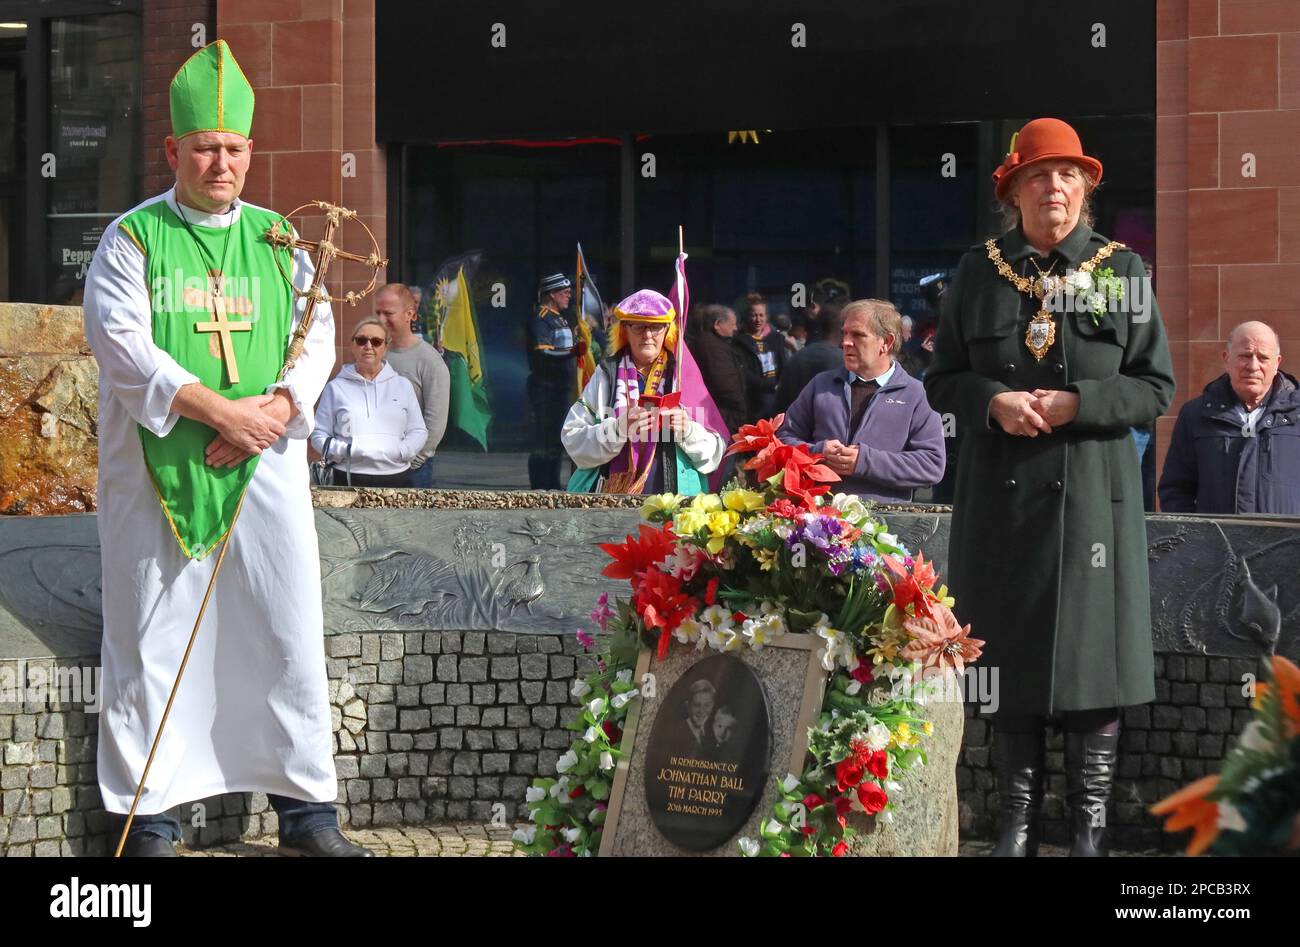 St Patrick Day 2023 défilé de la communauté irlandaise Orford LN Warrington à Bridge Street IRA Bombing Memorial, maire Cllr Jean Flaherty Cheshire, Royaume-Uni Banque D'Images